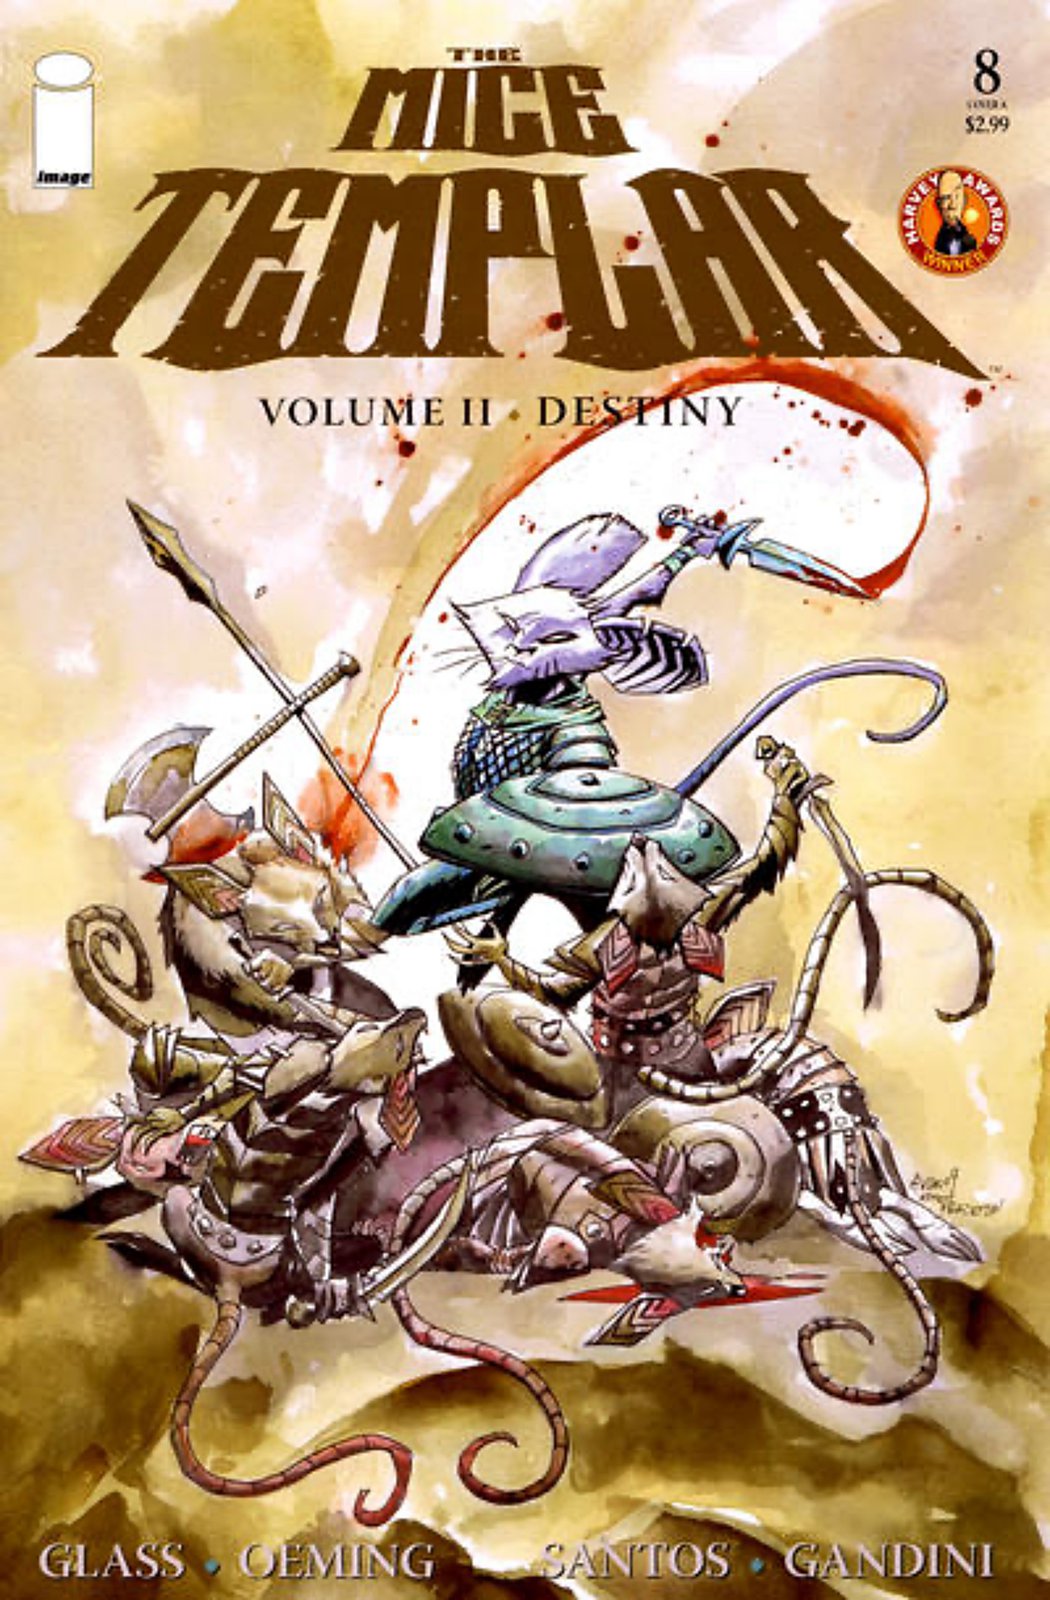 The Mice Templar Volume II: Destiny #8A (2009-2010) Image Comics